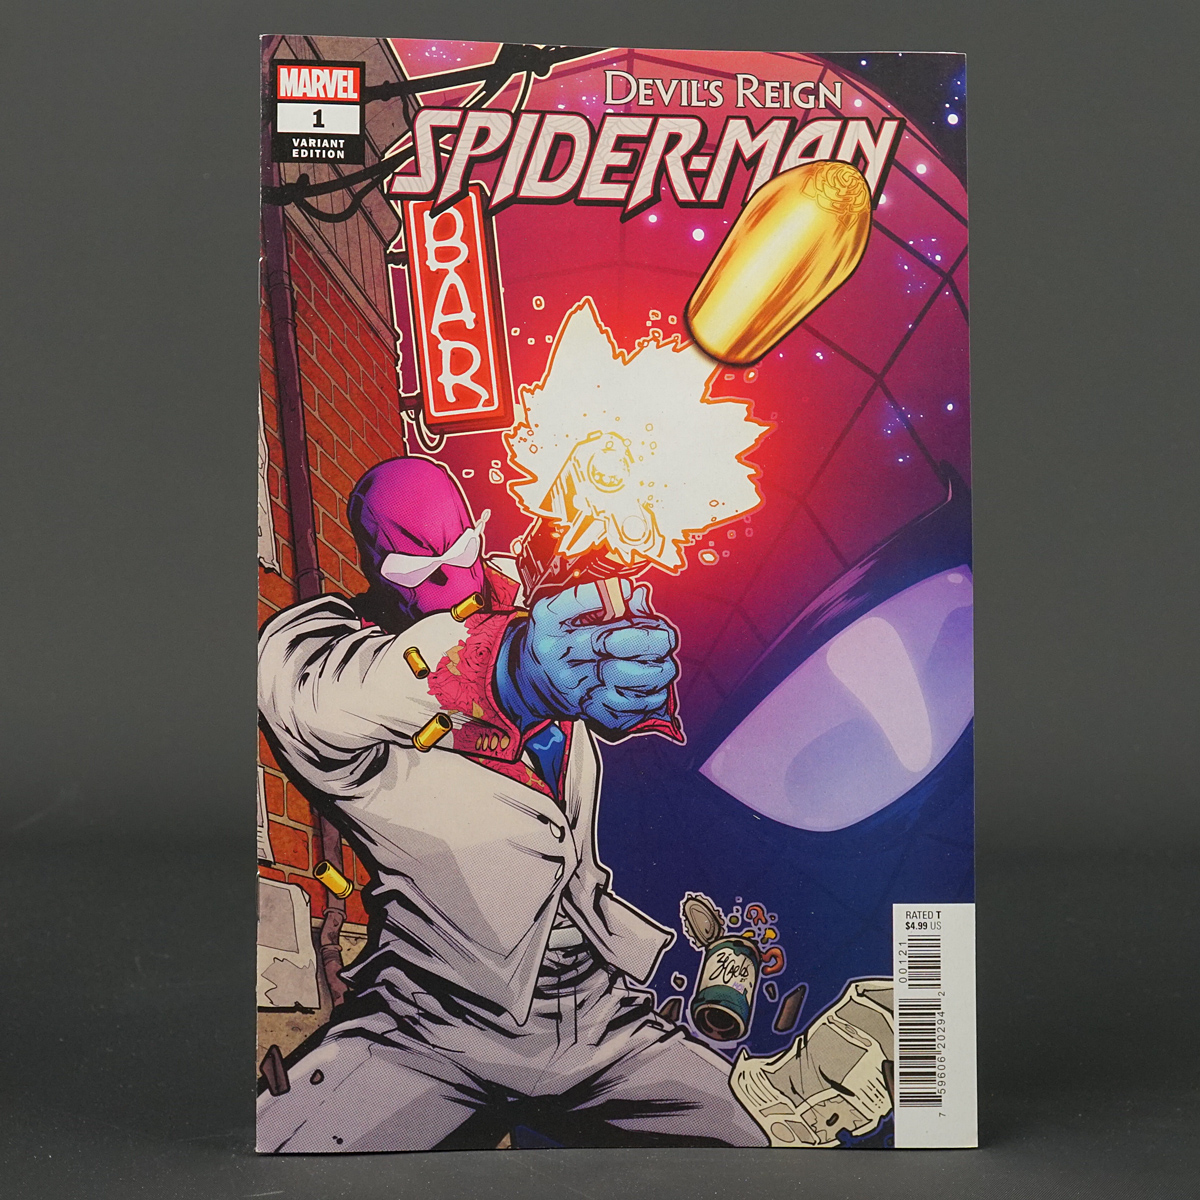 DEVILS REIGN SPIDER-MAN #1 var Marvel Comics 2022 DEC210917 (CA) Carlos